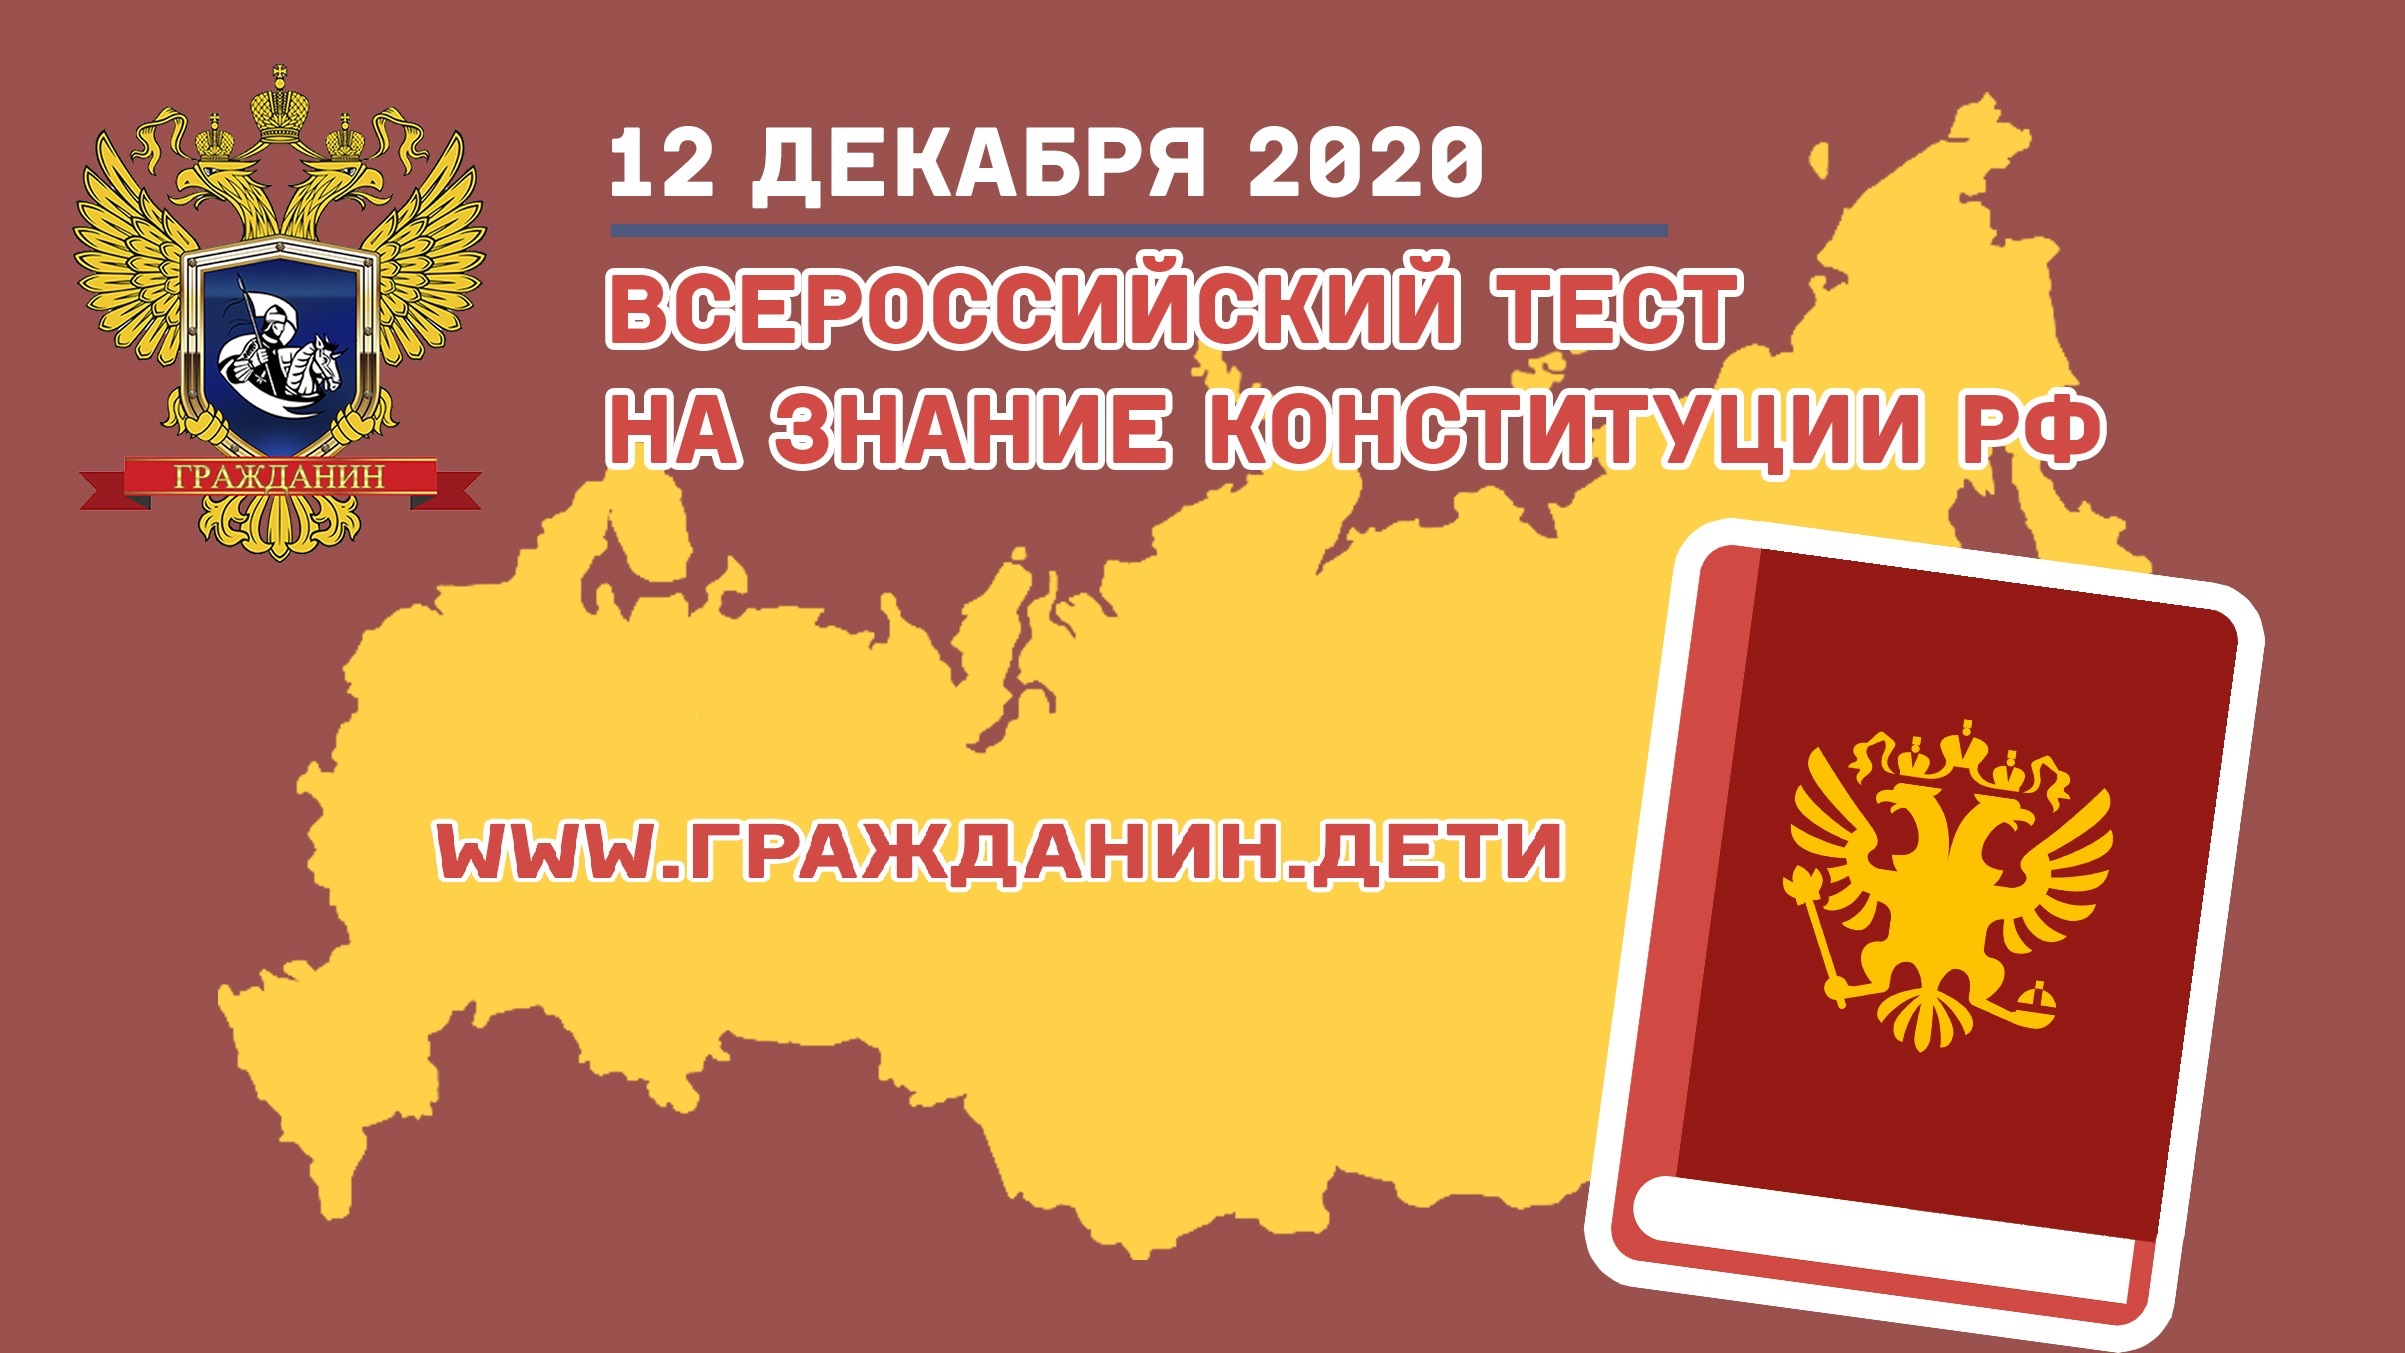  Всероссийский тест на знание Конституции РФ пройдет онлайн